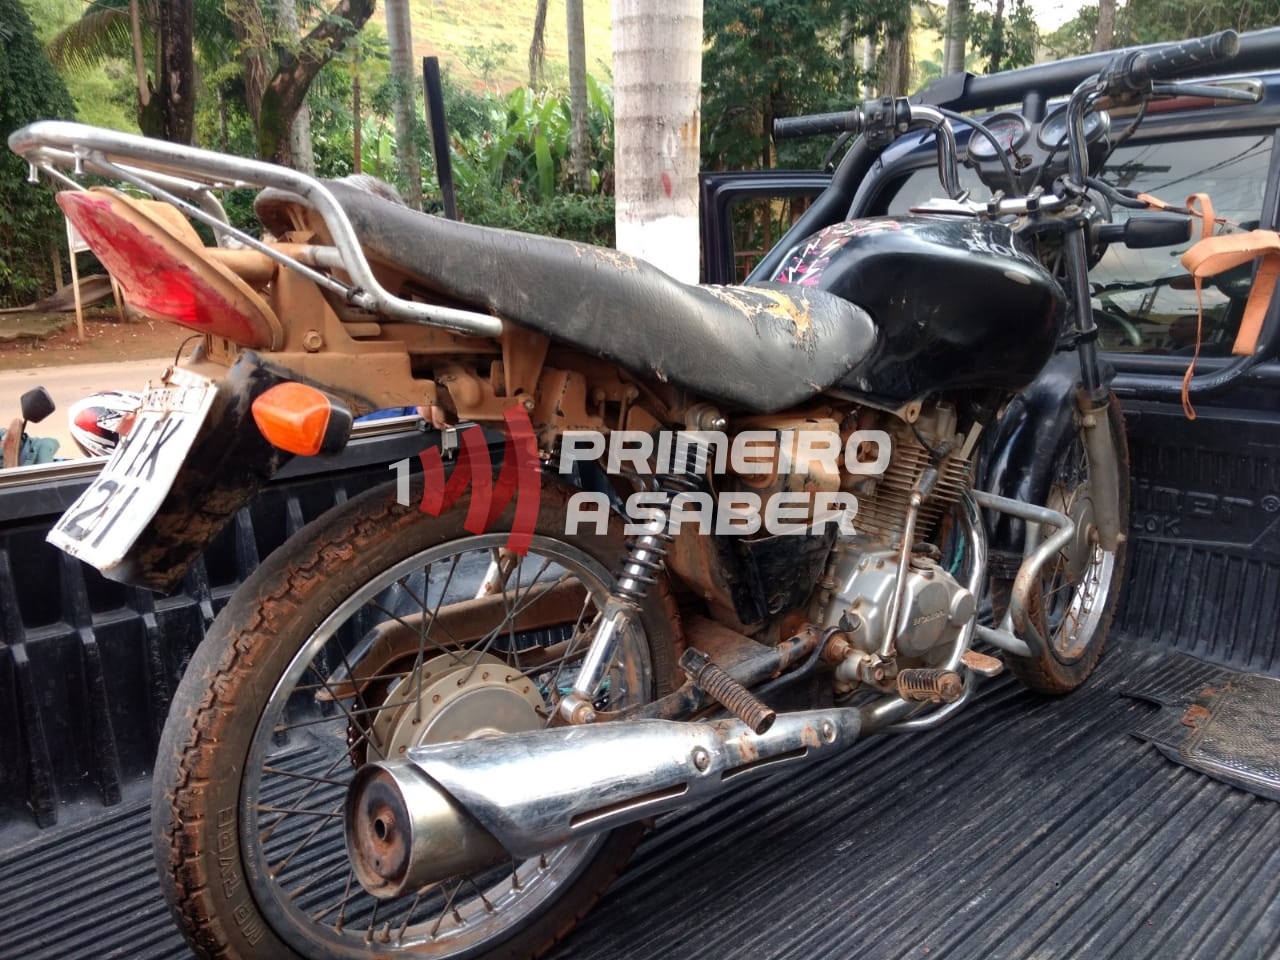 Motocicleta furtada por dois adolescentes em São Miguel do Anta é recuperada pela polícia